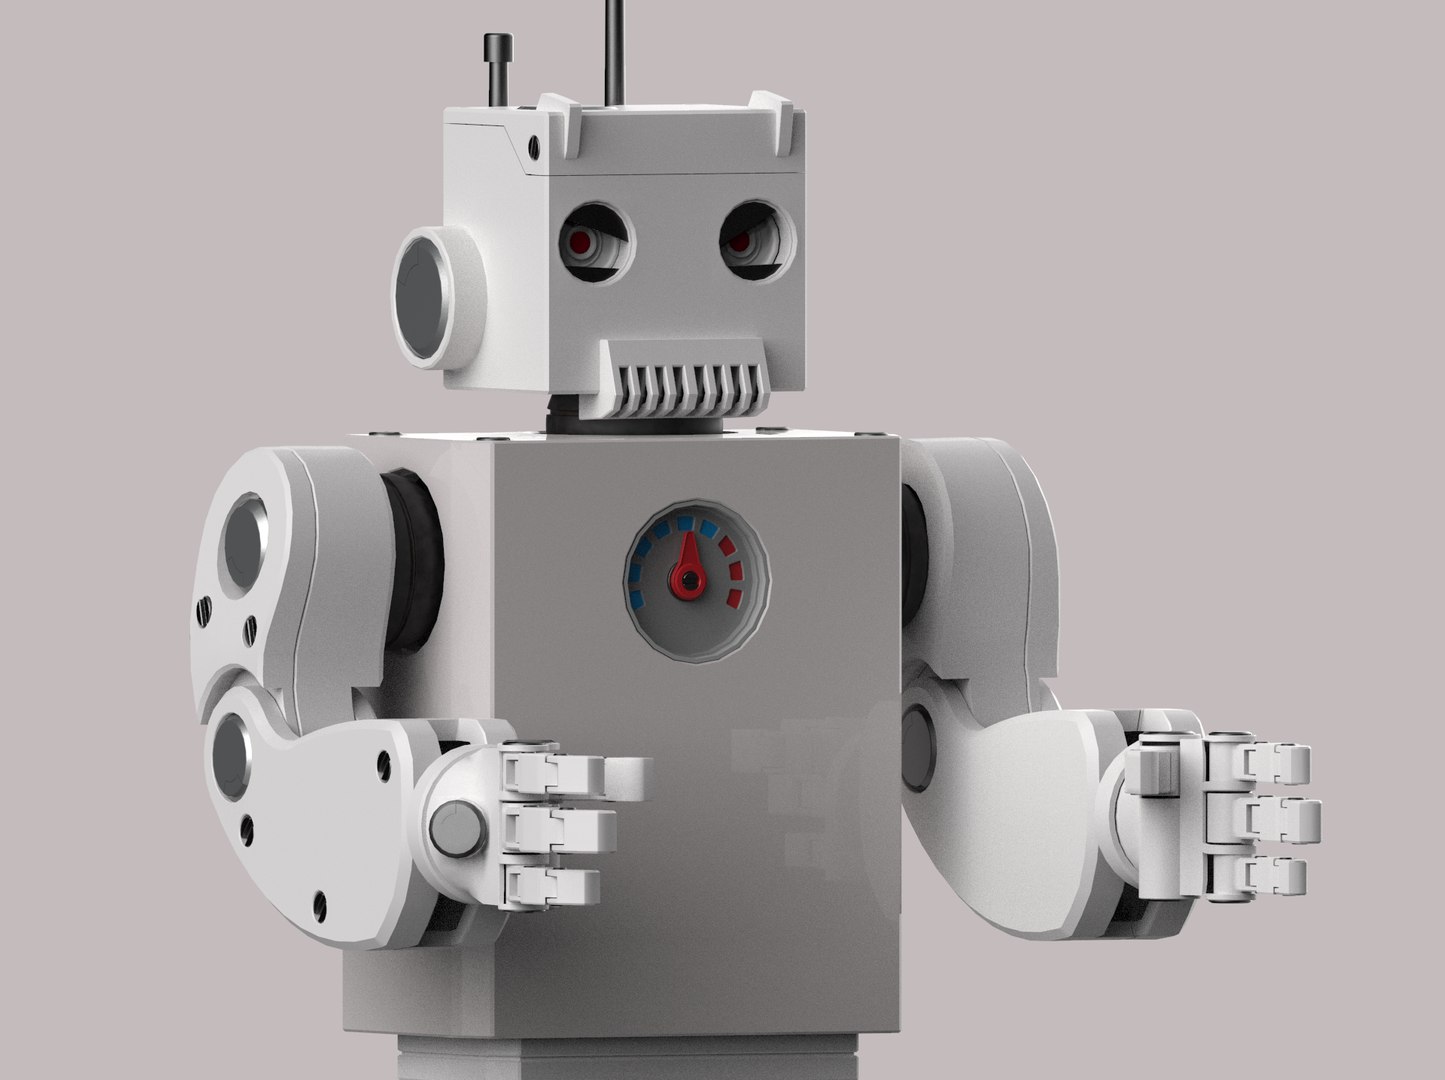 RobotBoy Cartoon personagem de robô Modelo 3D - TurboSquid 675078